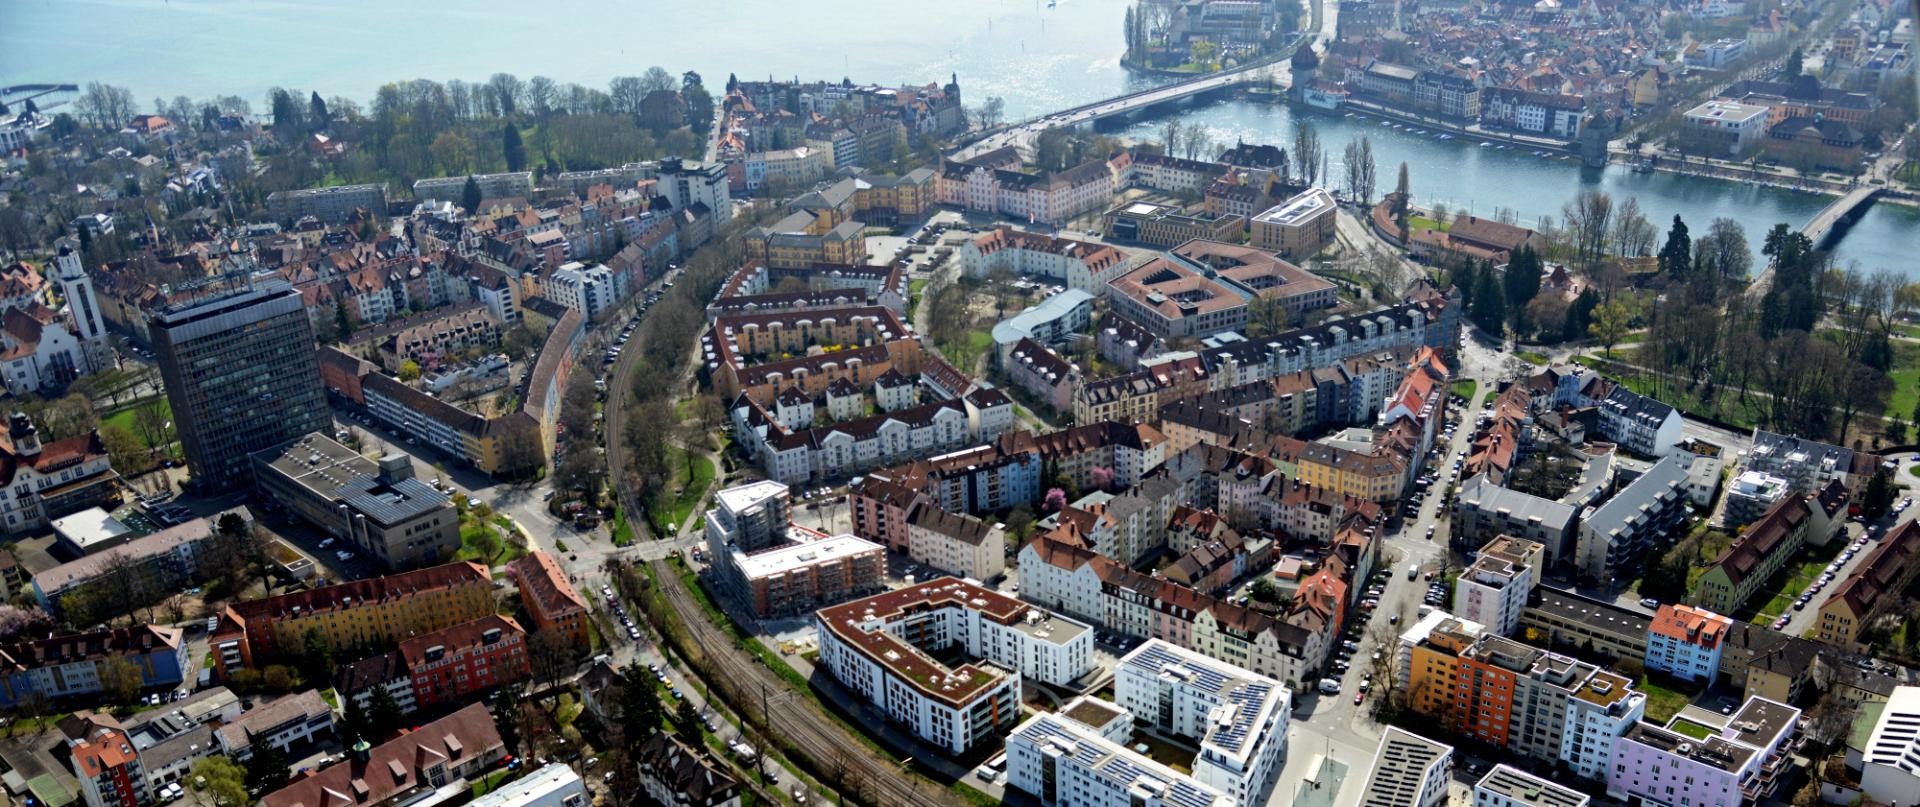 Luftaufnahme des Konstanzer Stadtteils Petershausen